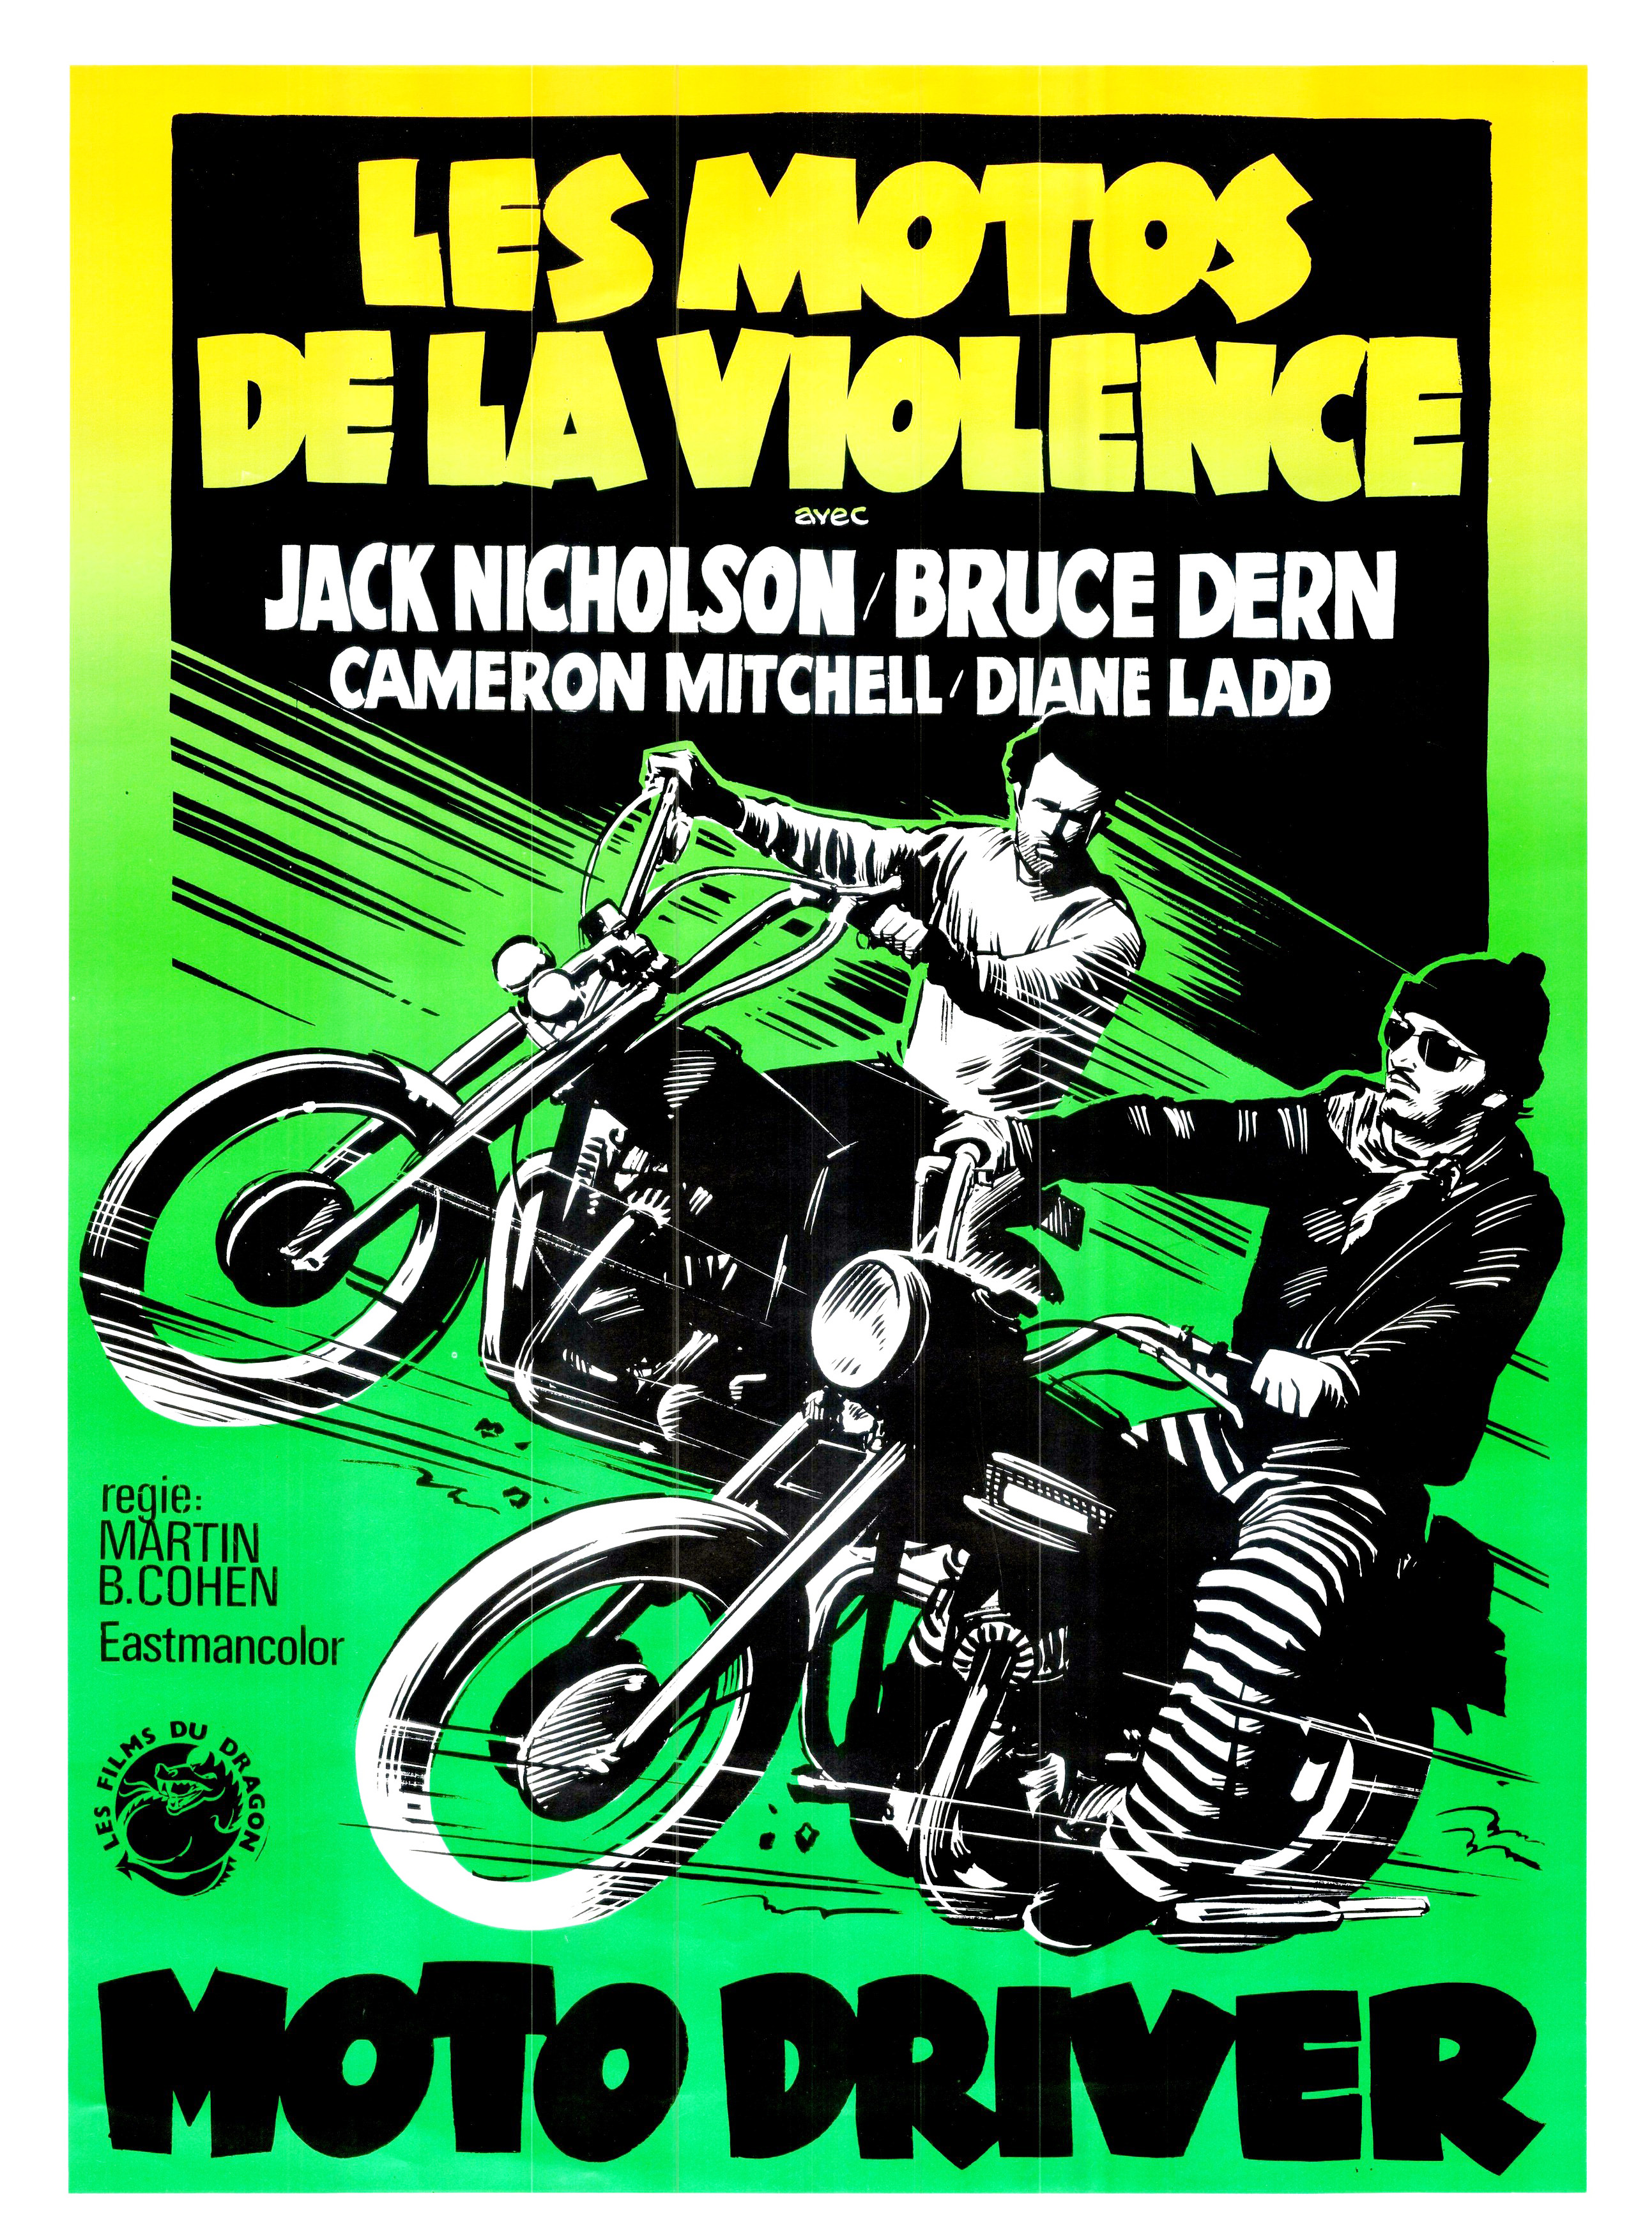 Les Motos De La Violence [1970]